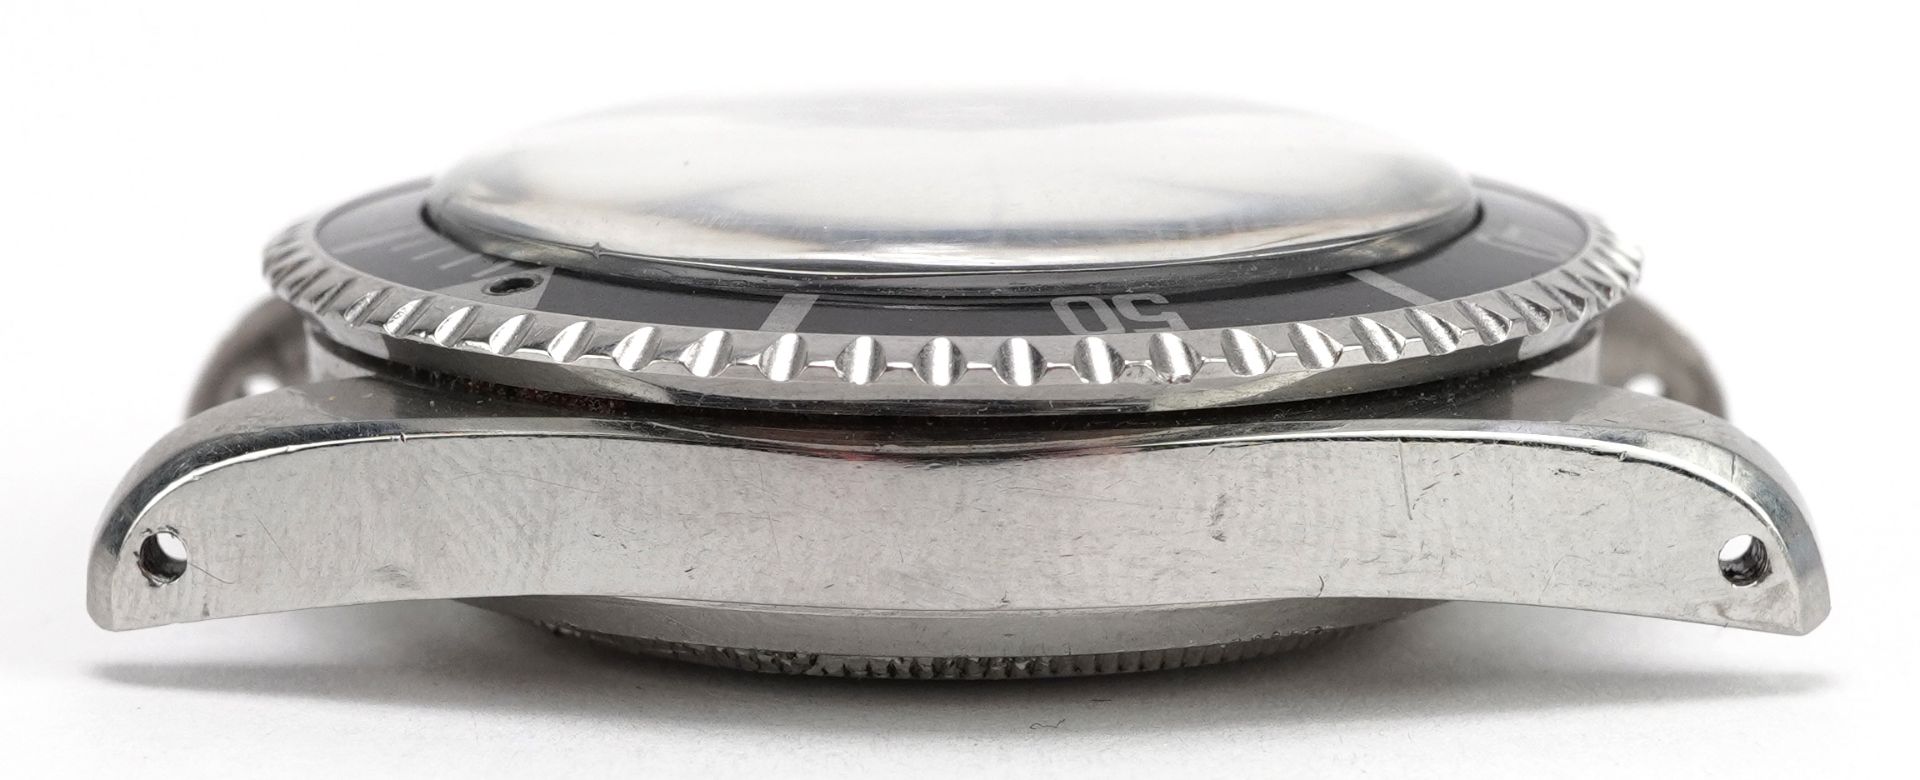 Rolex, gentleman's Rolex Oyster Submariner wristwatch, ref 5521, serial number 818329, 40mm - Image 6 of 11